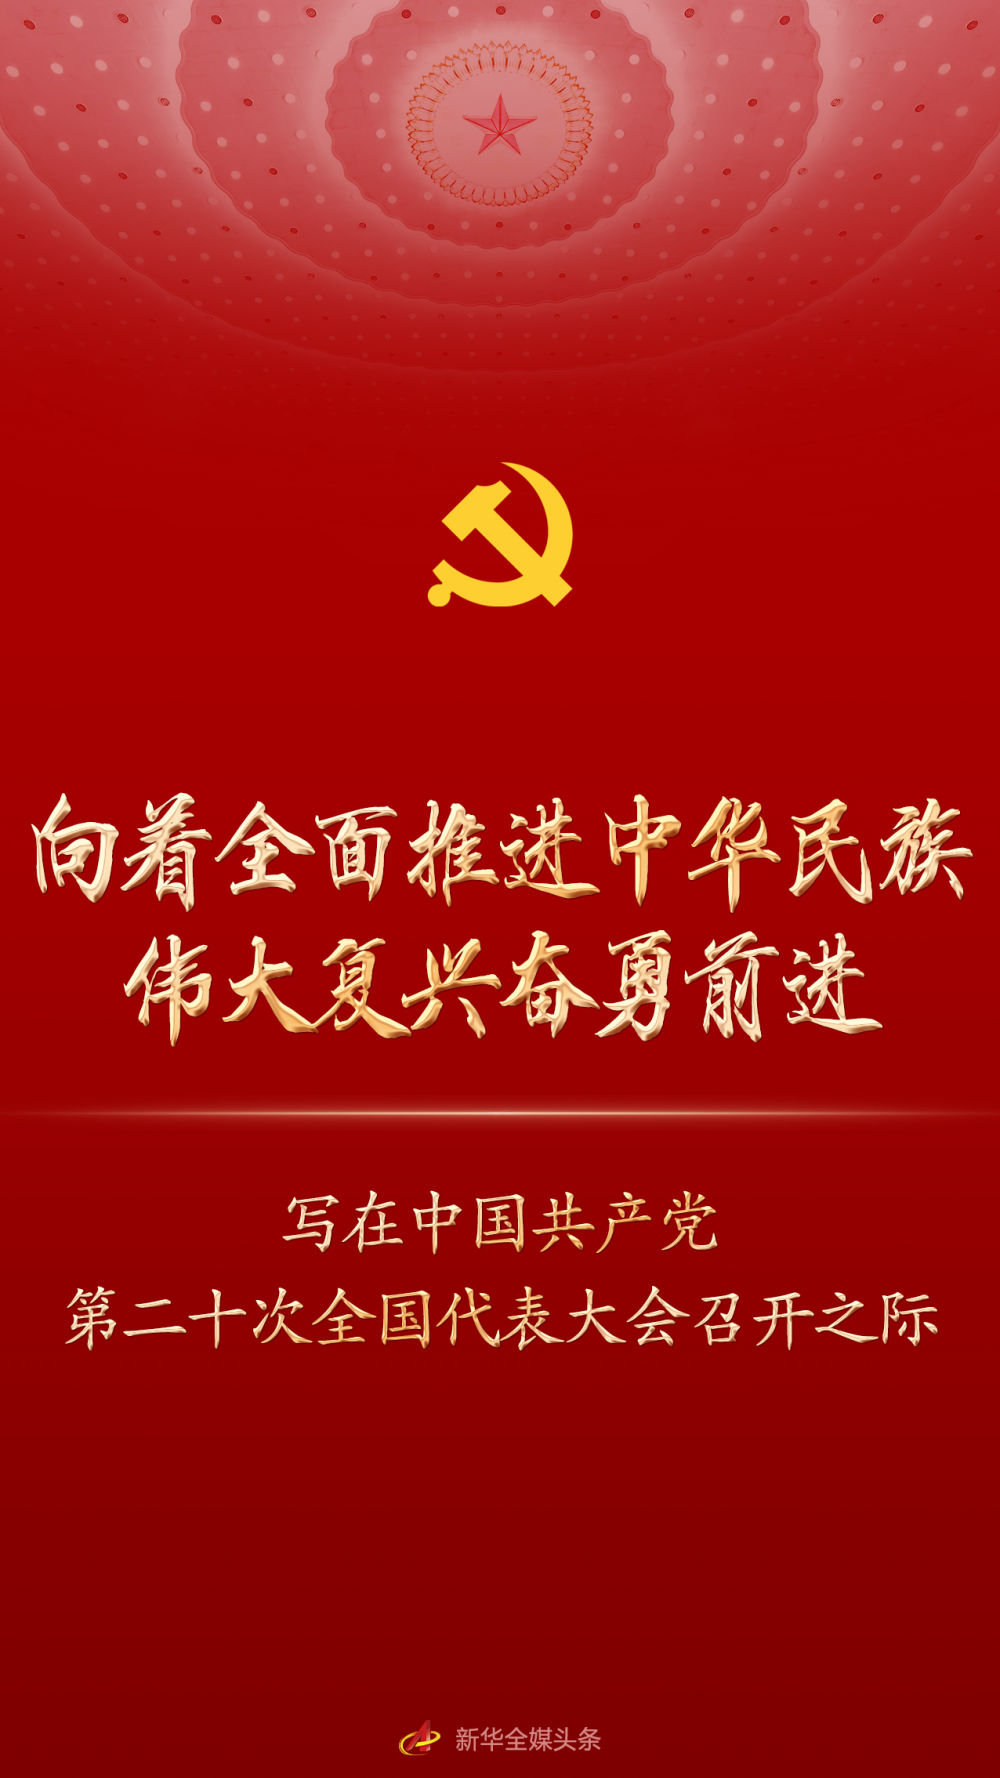 向着全面推进中华民族伟大复兴奋勇前进——写在中国共产党第二十次全国代表大会召开之